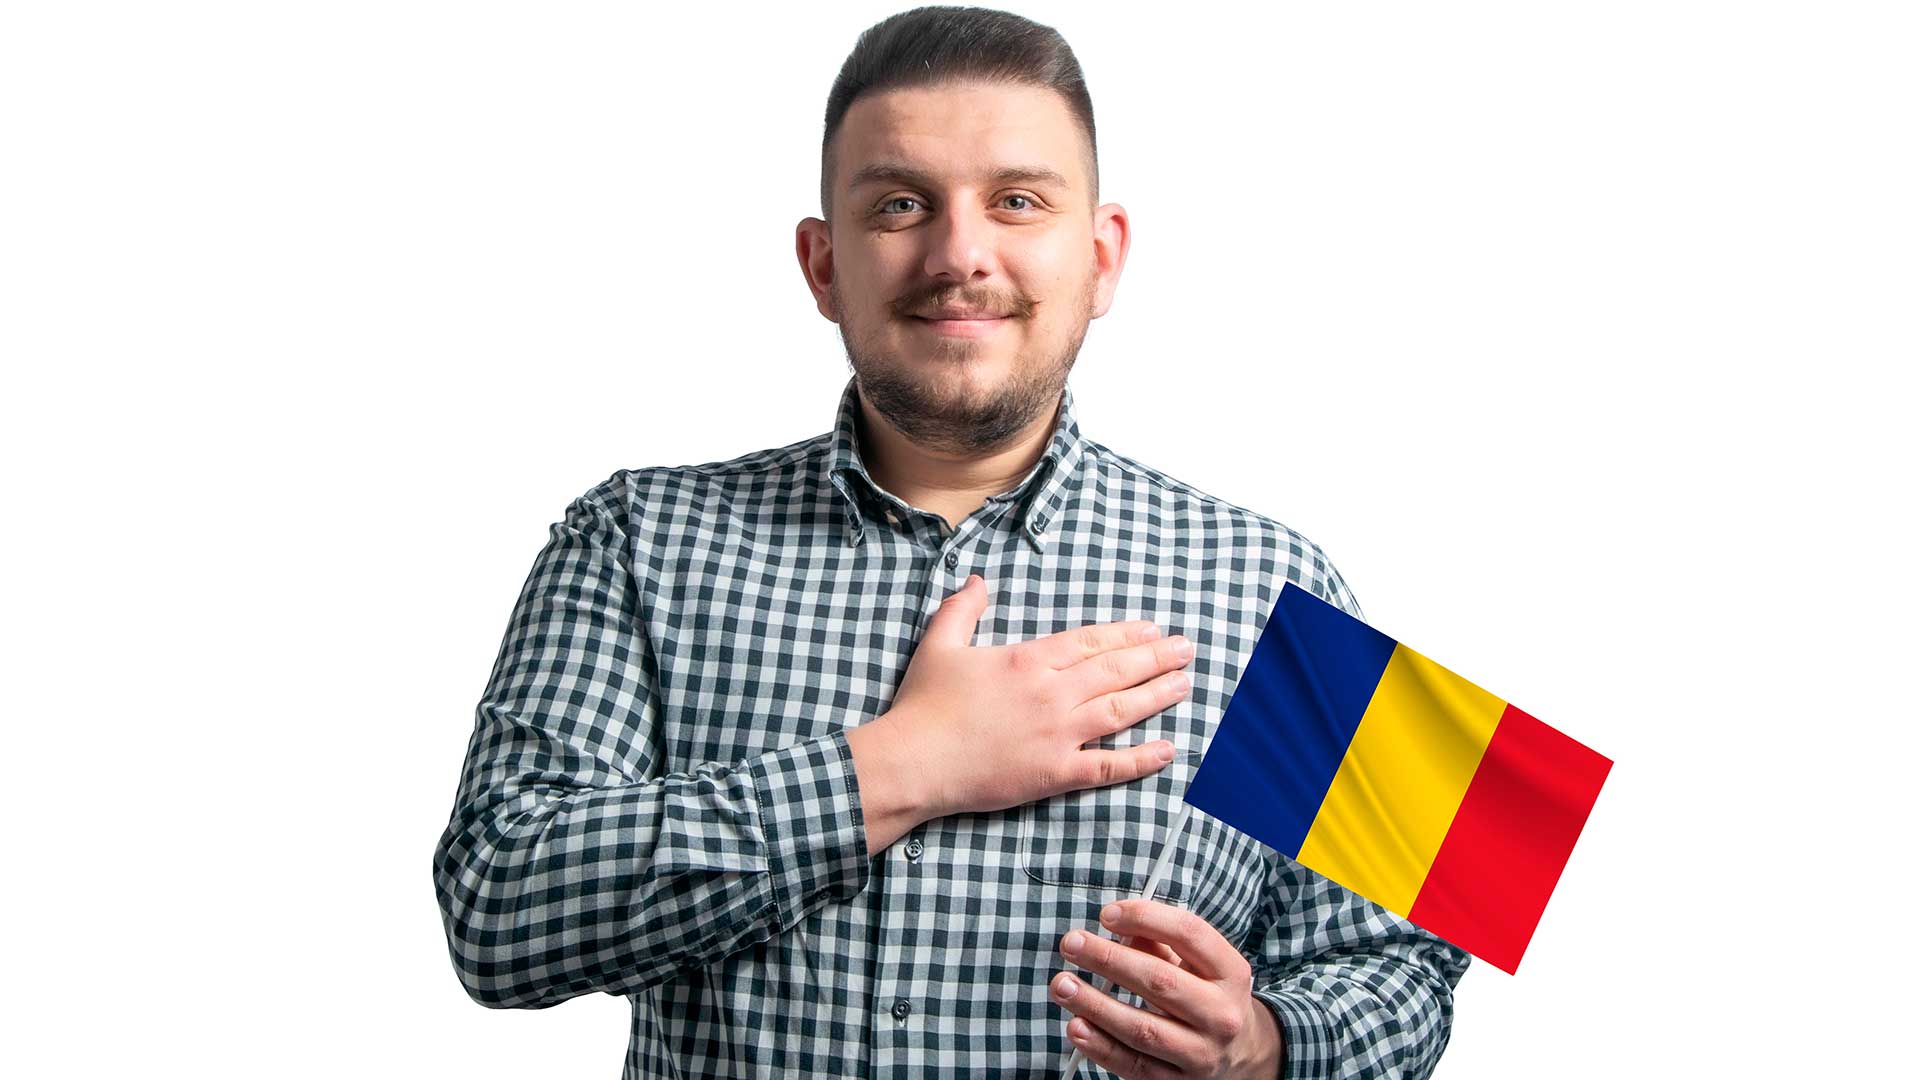 Принятие присяги на верность Румынии, как окончательный этап оформления румынского паспорта